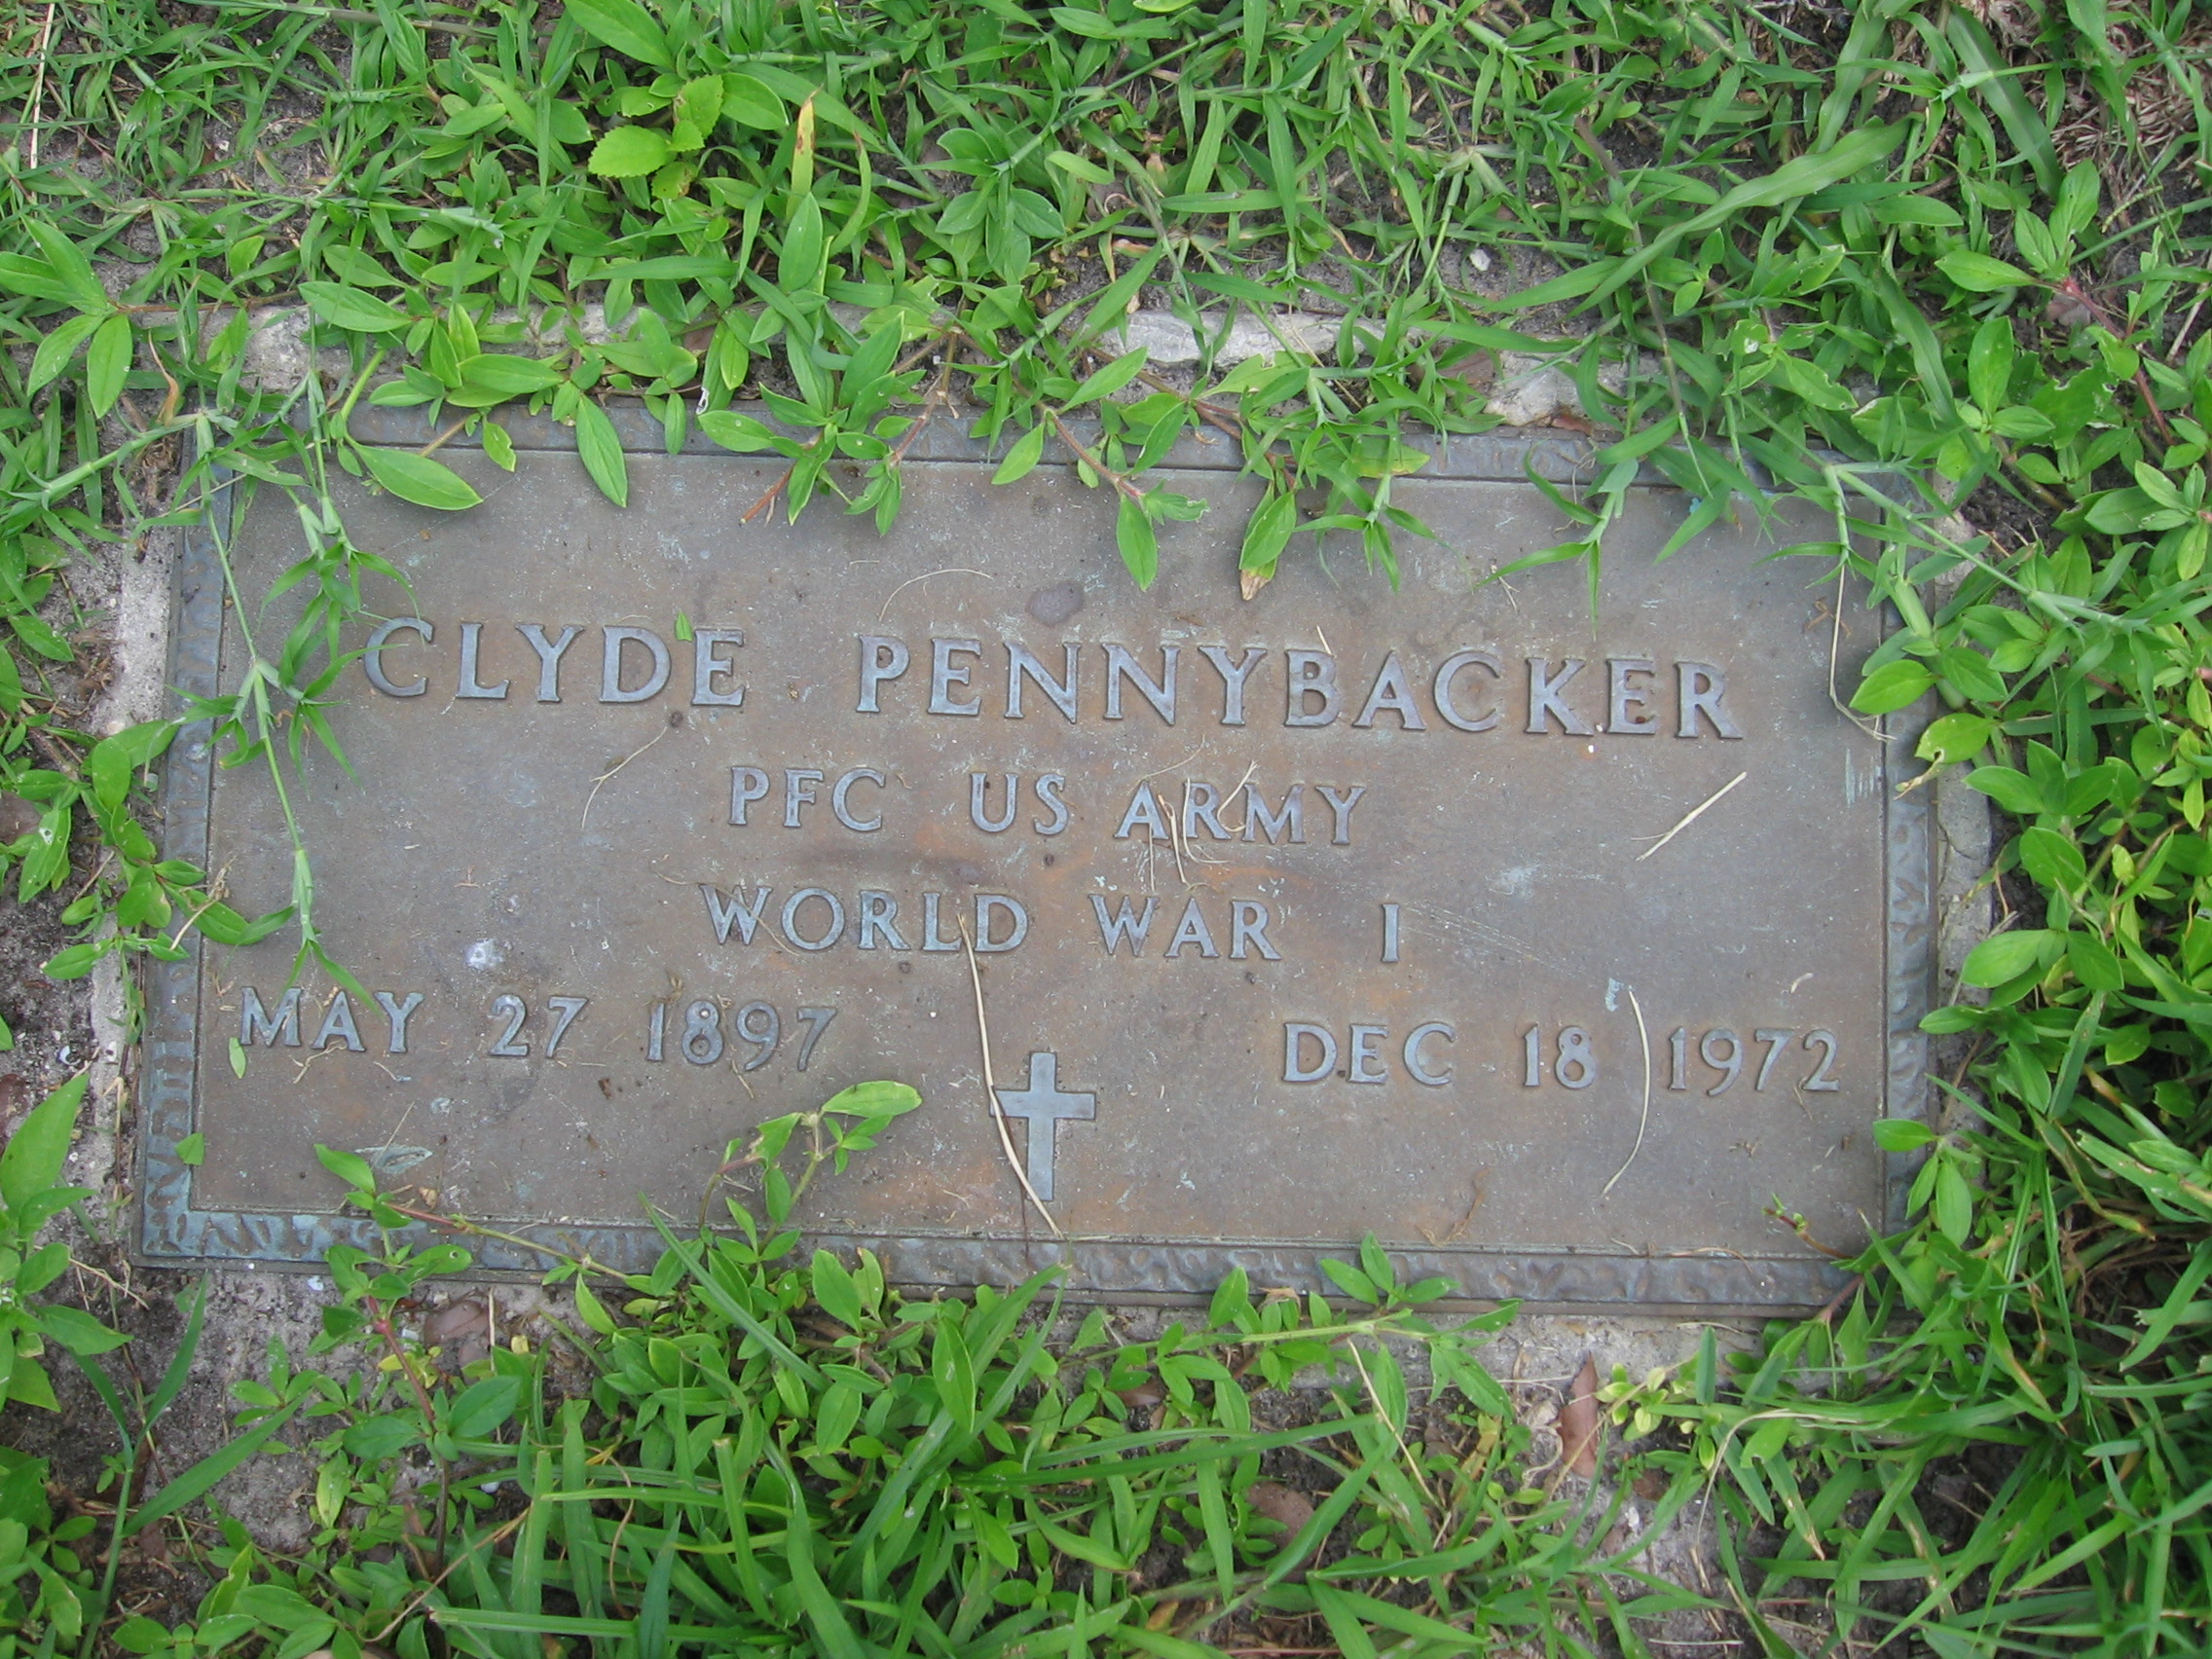 PFC Clyde Pennybacker